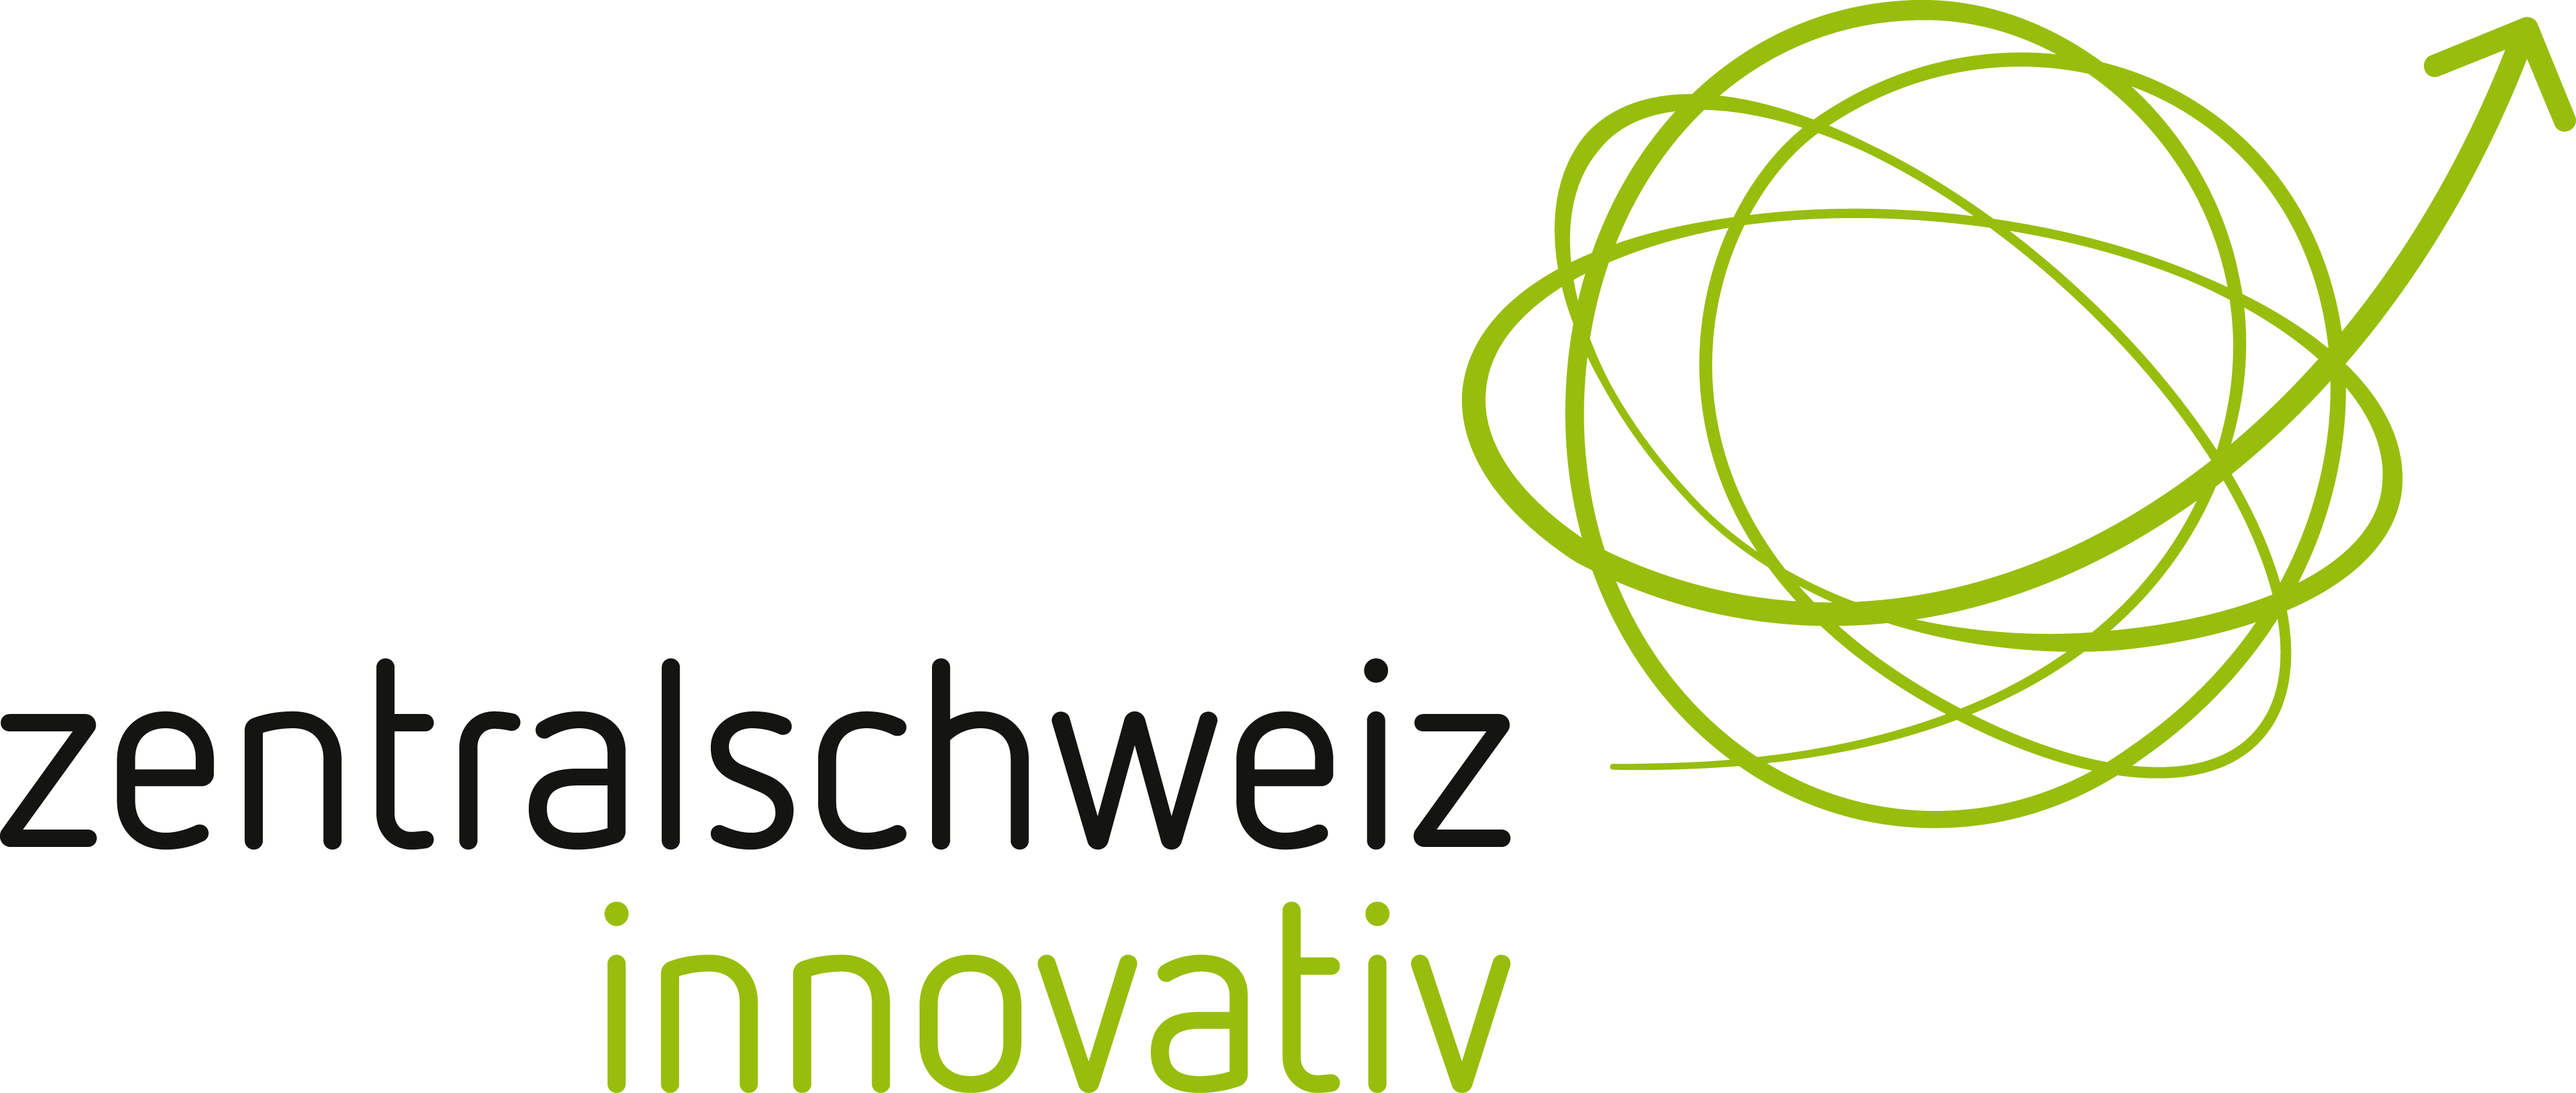 Zentralschweiz Innovativ